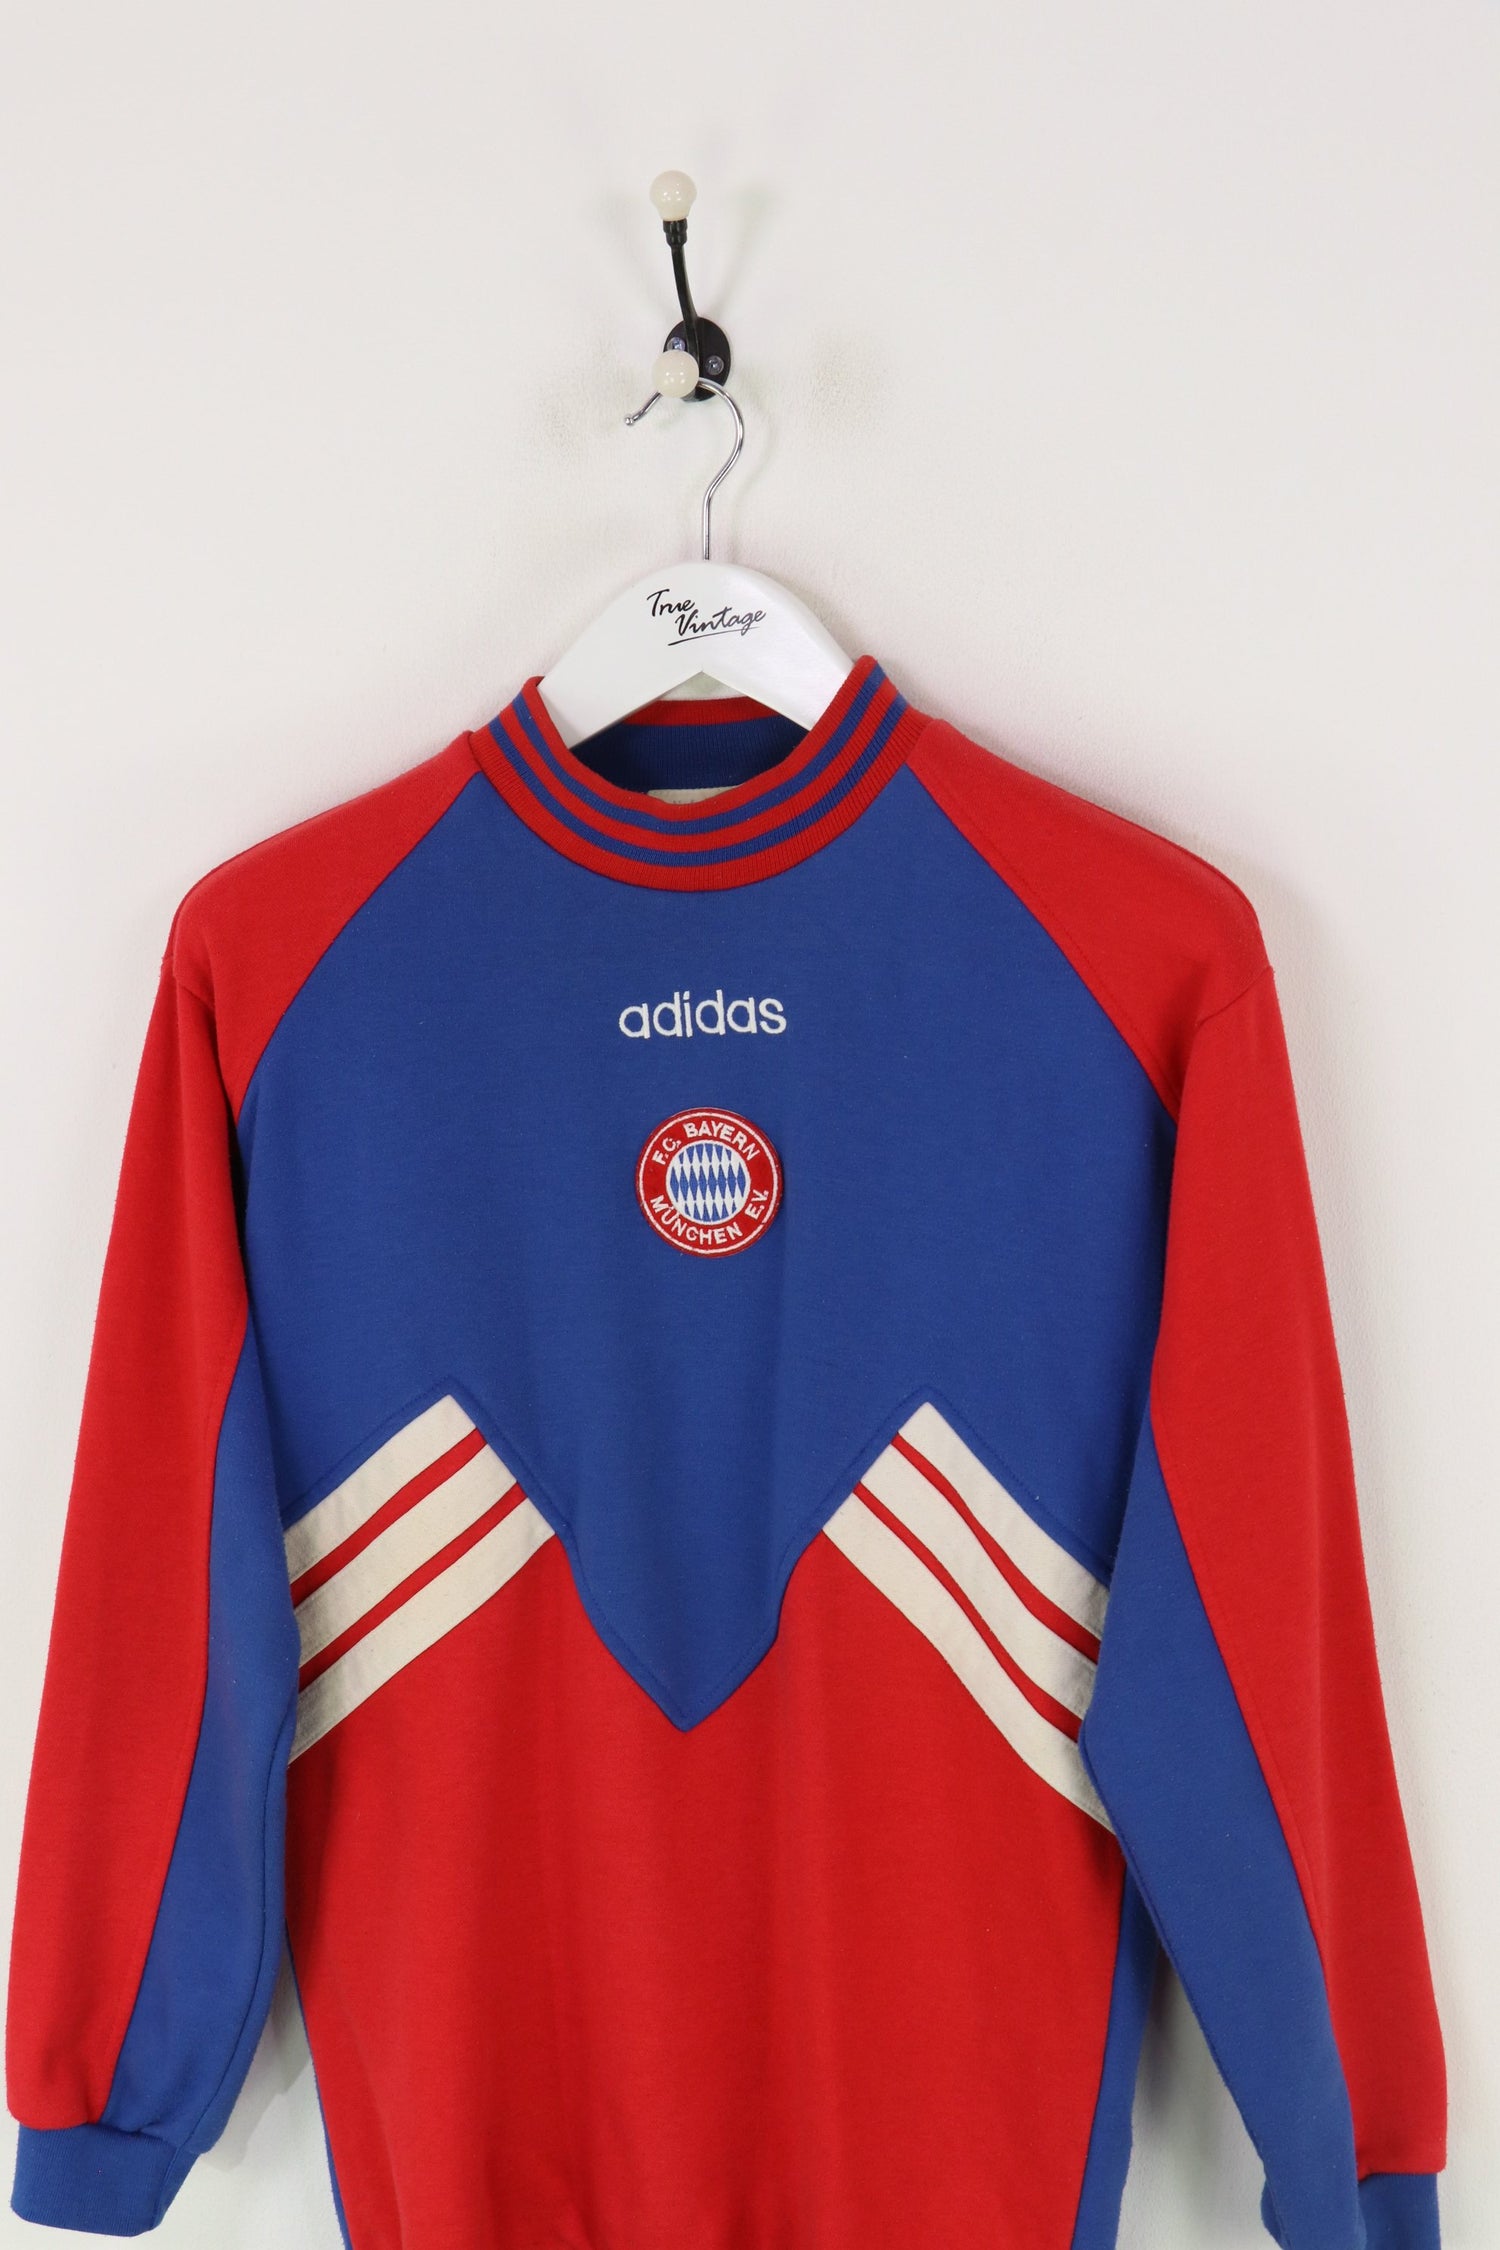 Adidas Bayern Munich Sweatshirt Red/Blue Medium